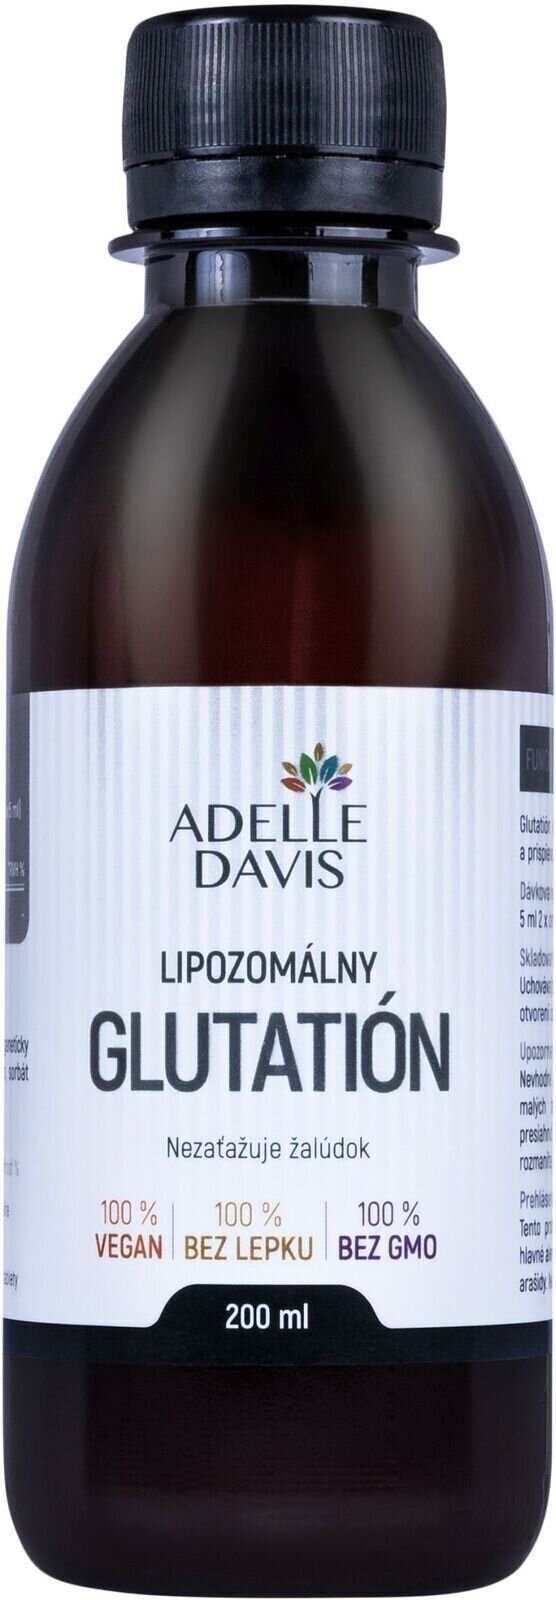 Antioxidanter och naturliga extrakt Adelle Davis Liposomal Glutathion 200 ml Antioxidanter och naturliga extrakt